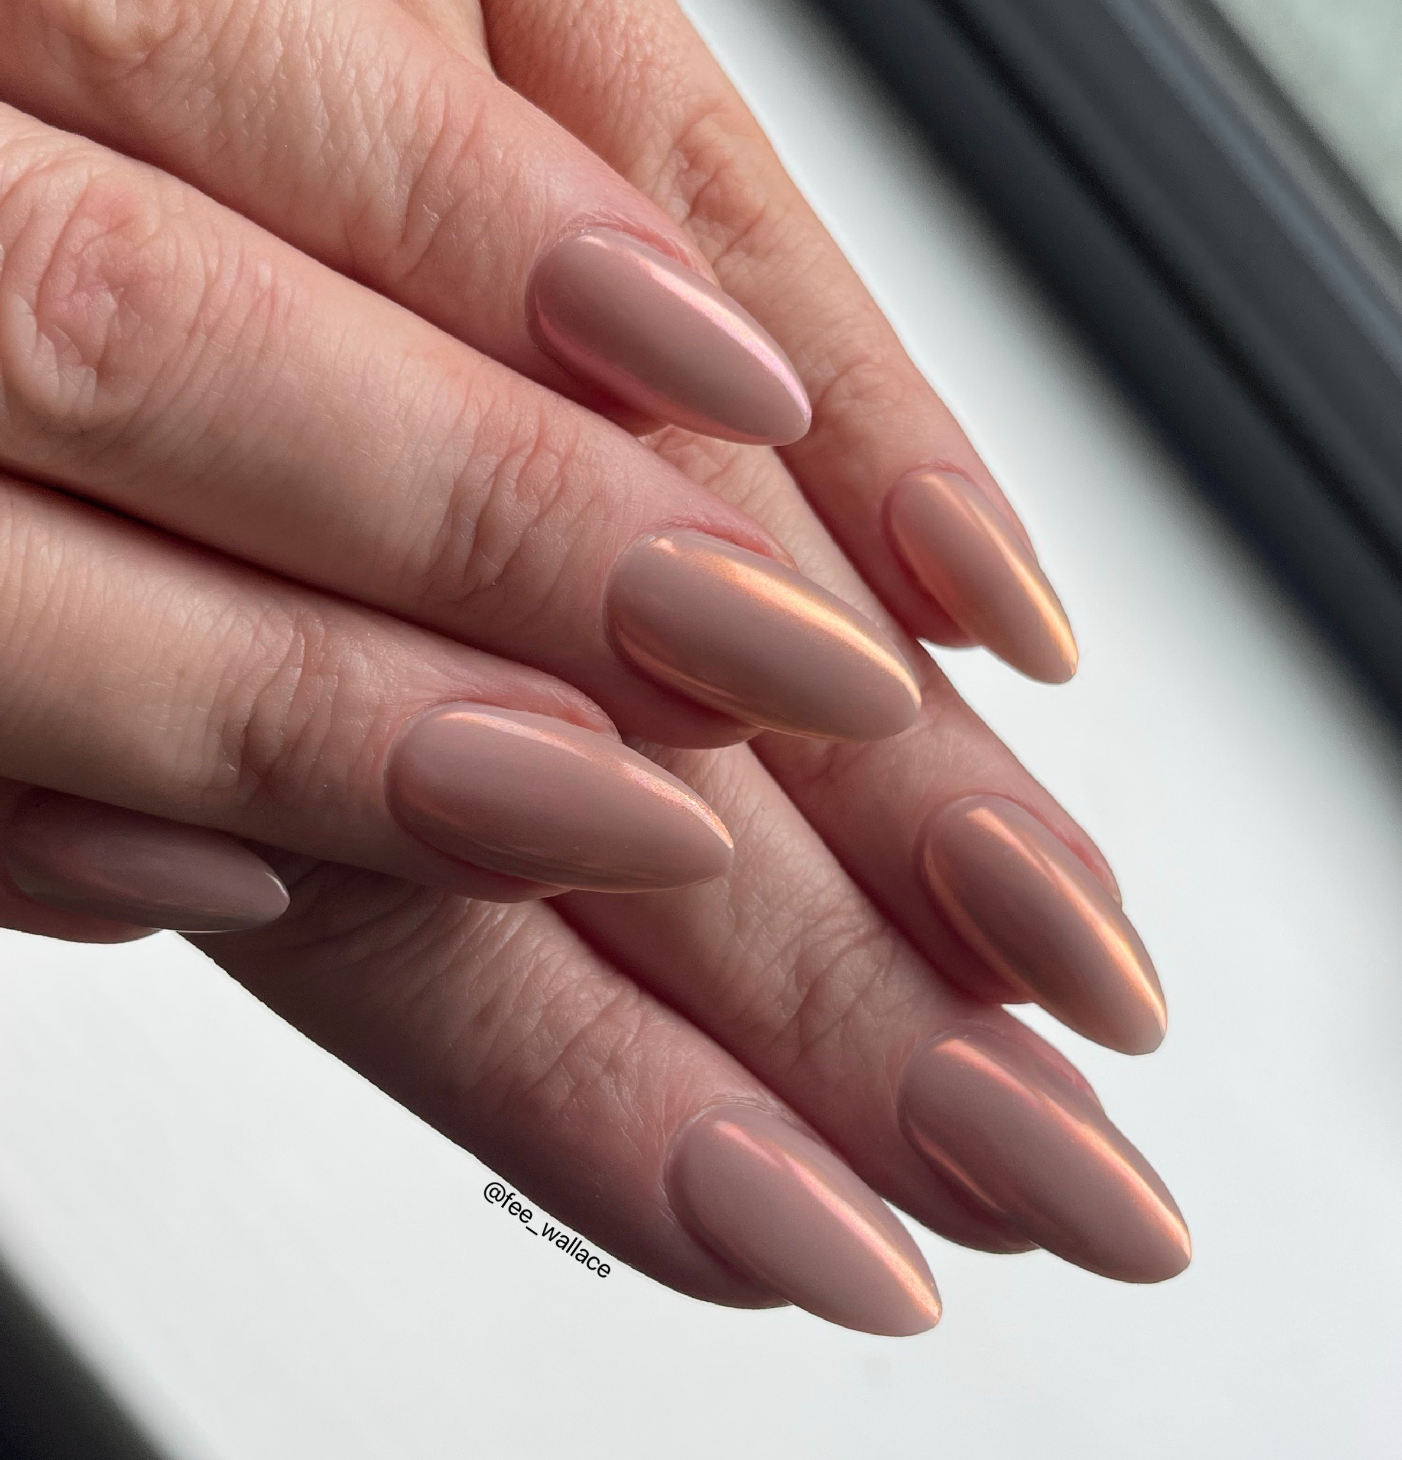 Bridal glazed nails using Builder Gel